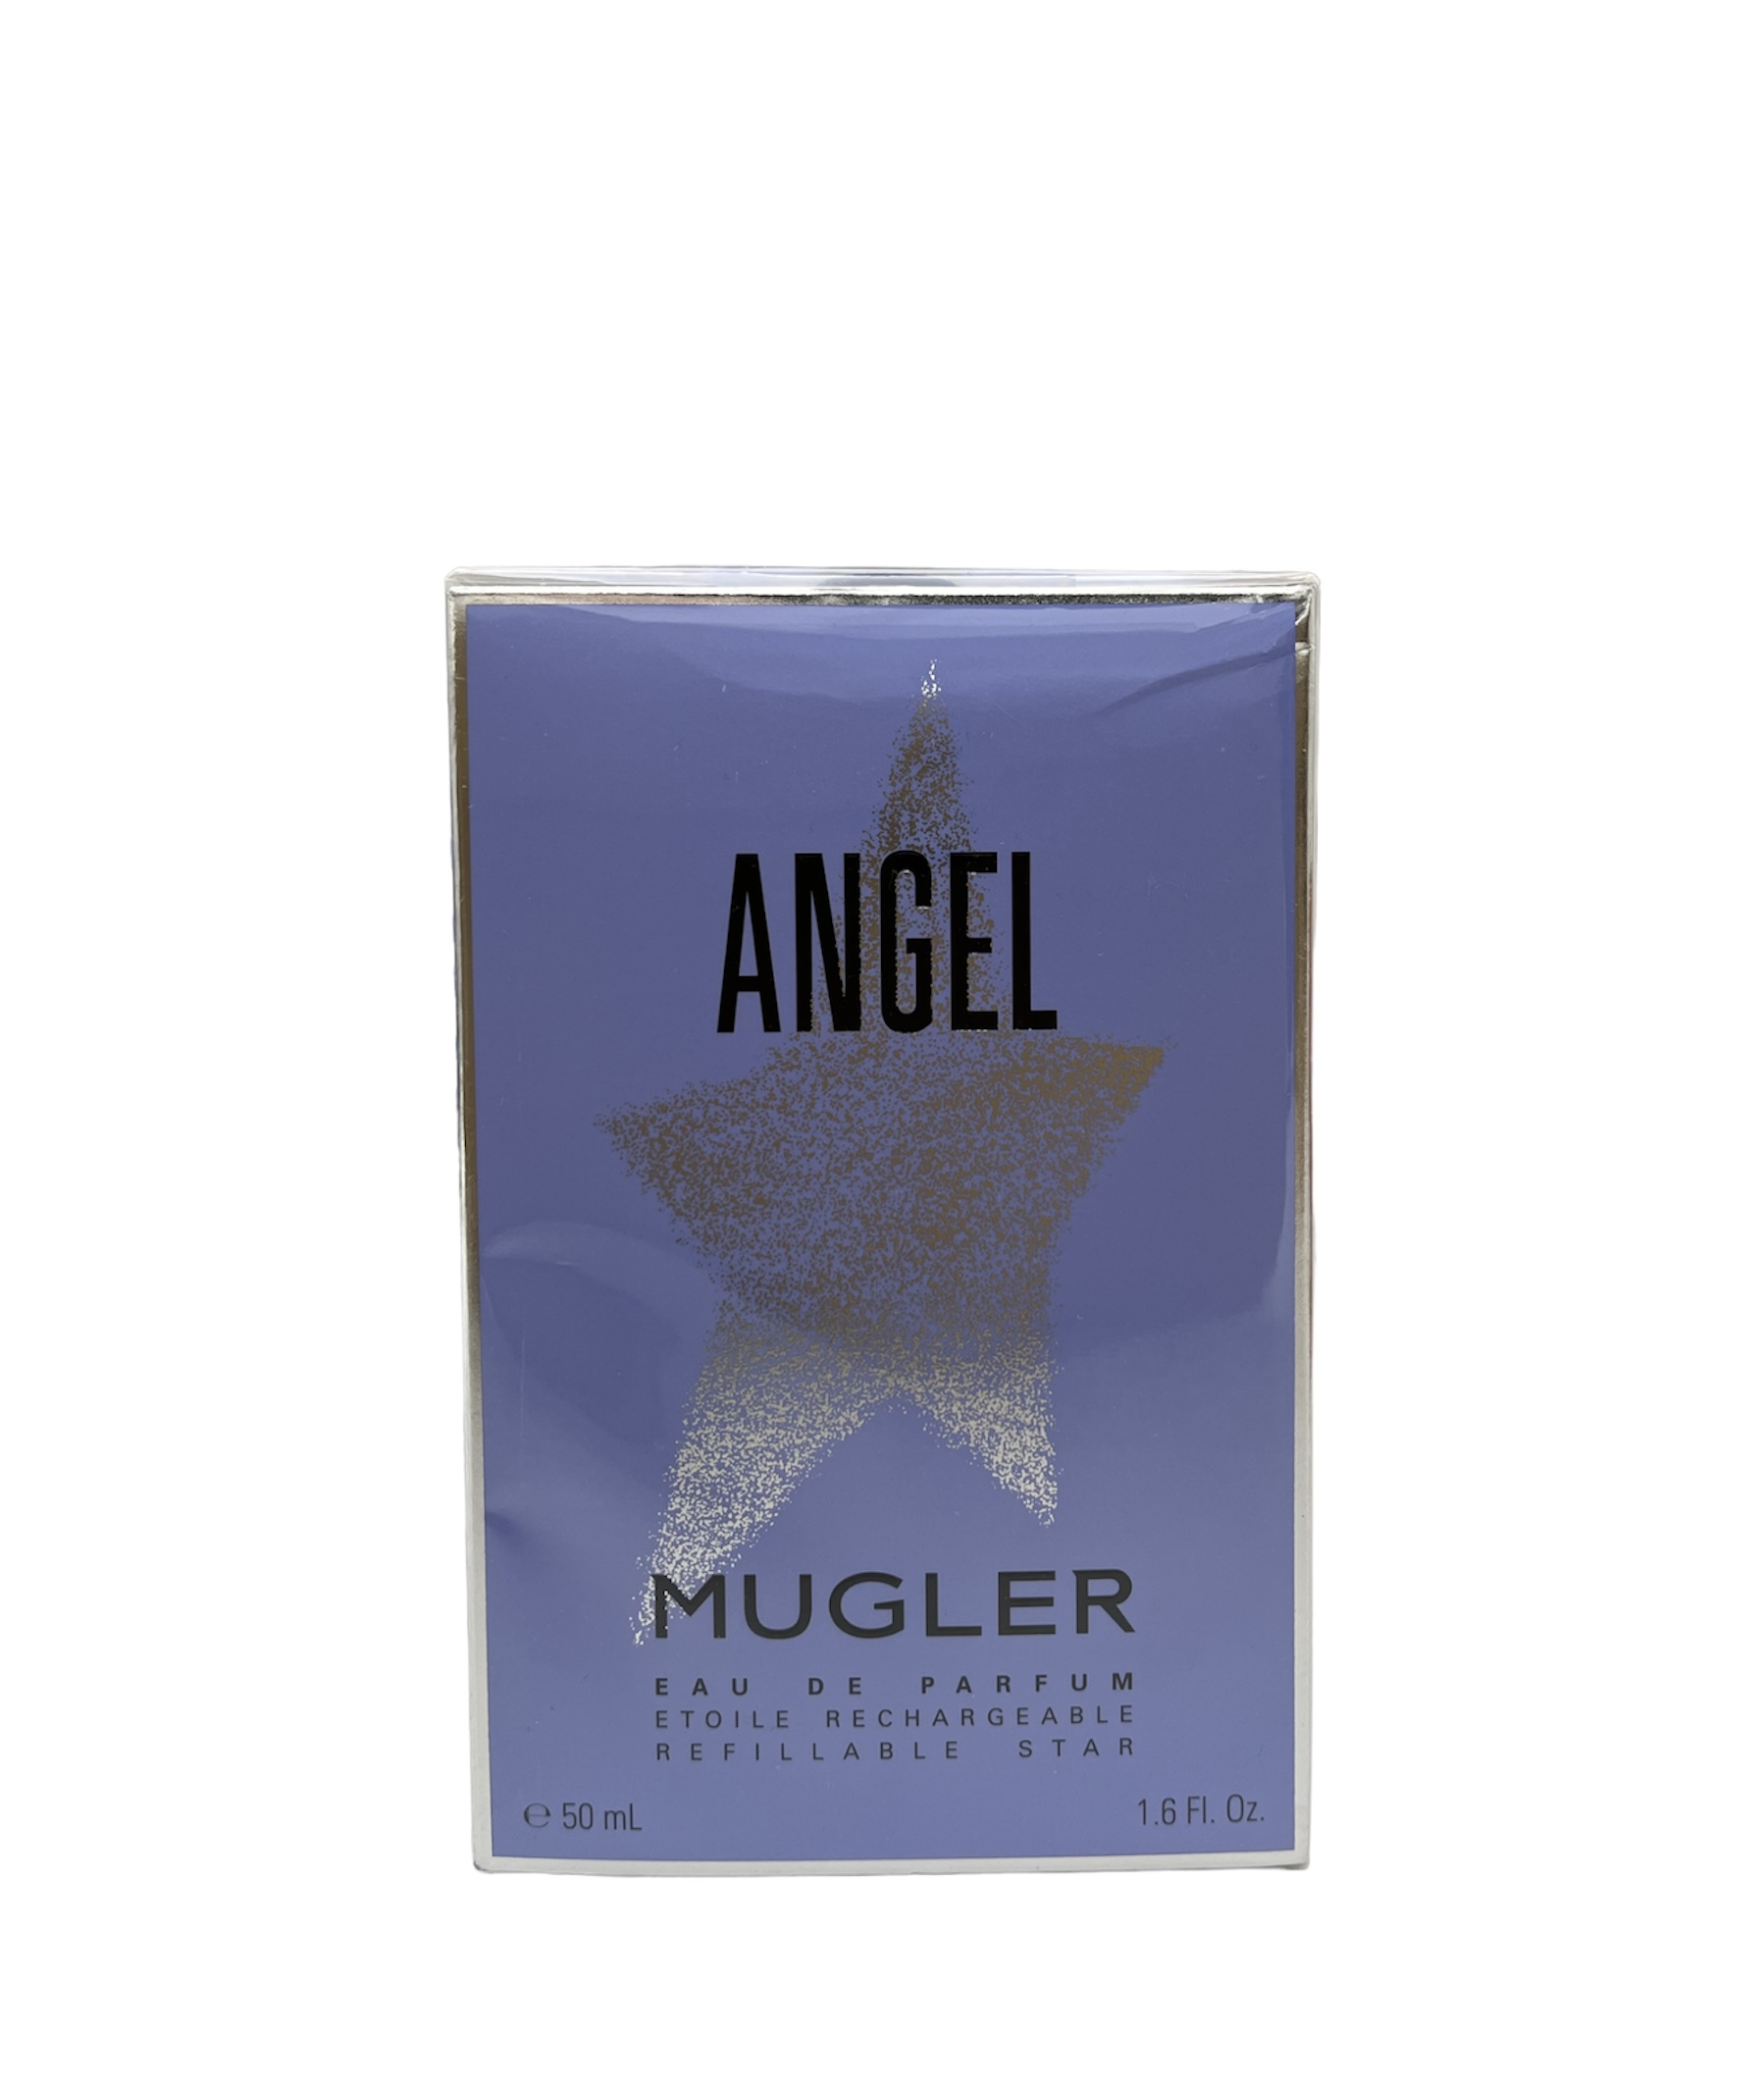  Thierry Mugler Angel Eau de Parfum 50ml 